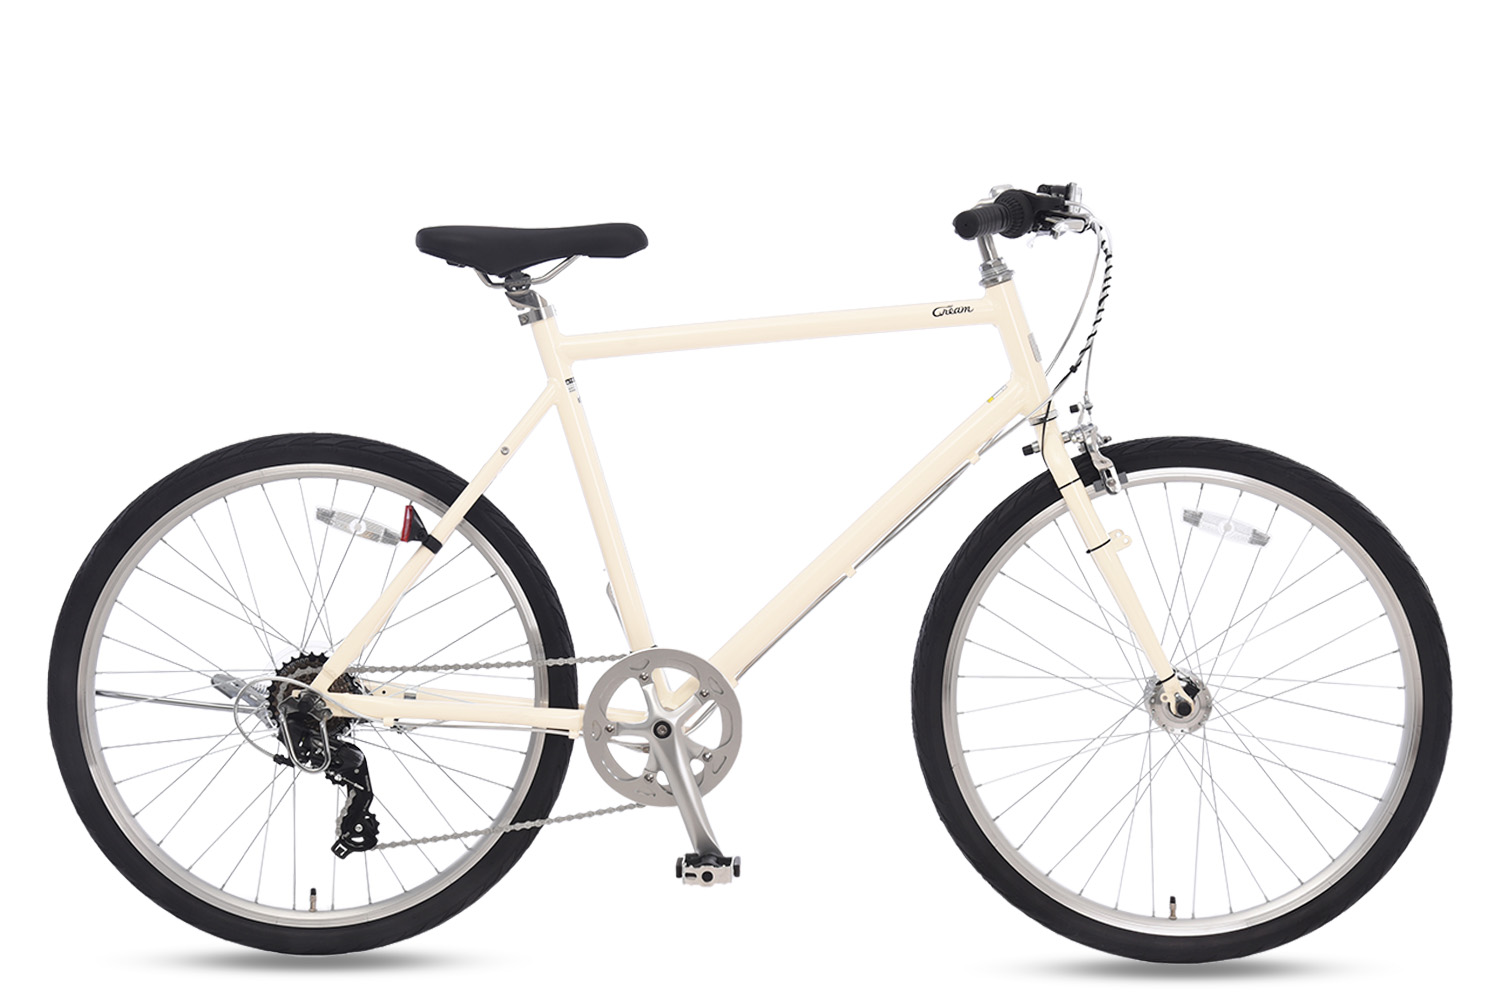 白い自転車おすすめ12選 おしゃれモデルの価格や特徴をご紹介 Aumo アウモ